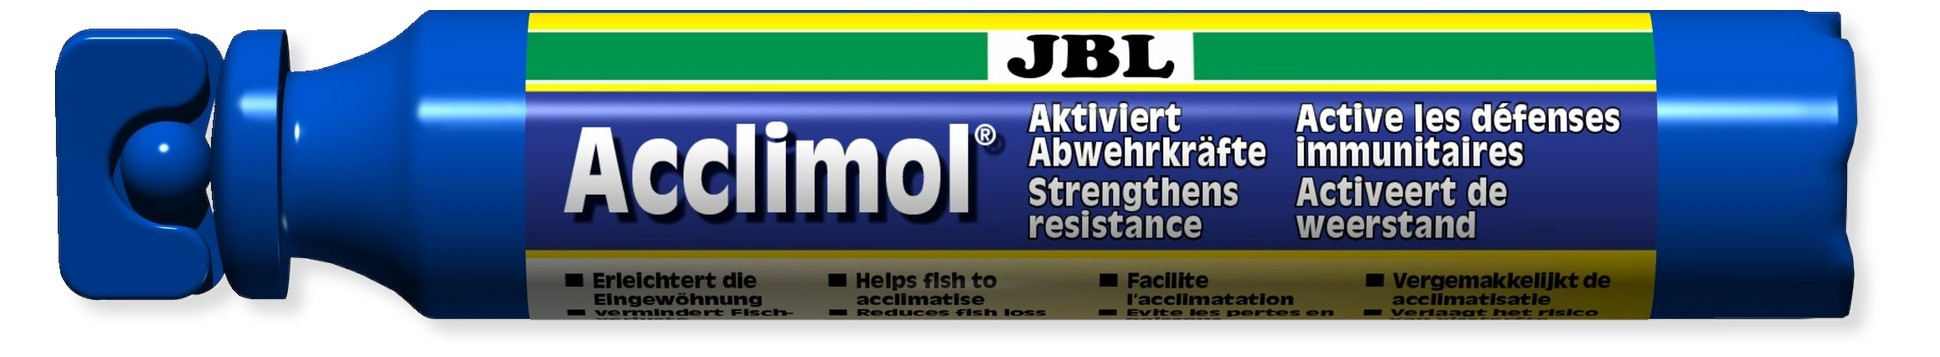 JBL waterverbeteraar voor acclimatisatie van zoete aquariumvissen - 50 ml